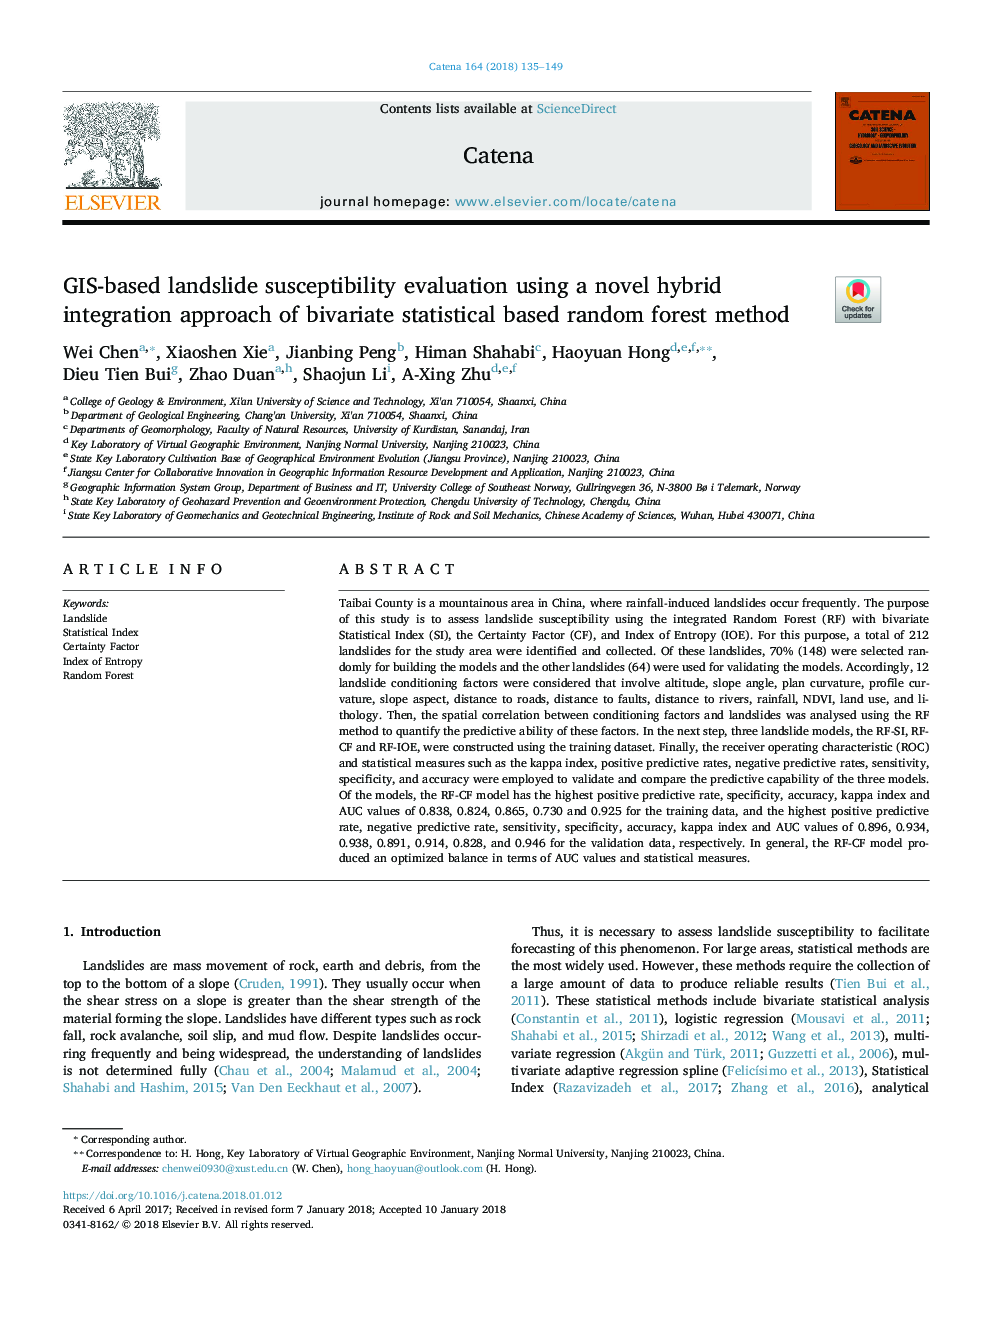 GIS-based landslide susceptibility evaluation using a novel hybrid integration approach of bivariate statistical based random forest method